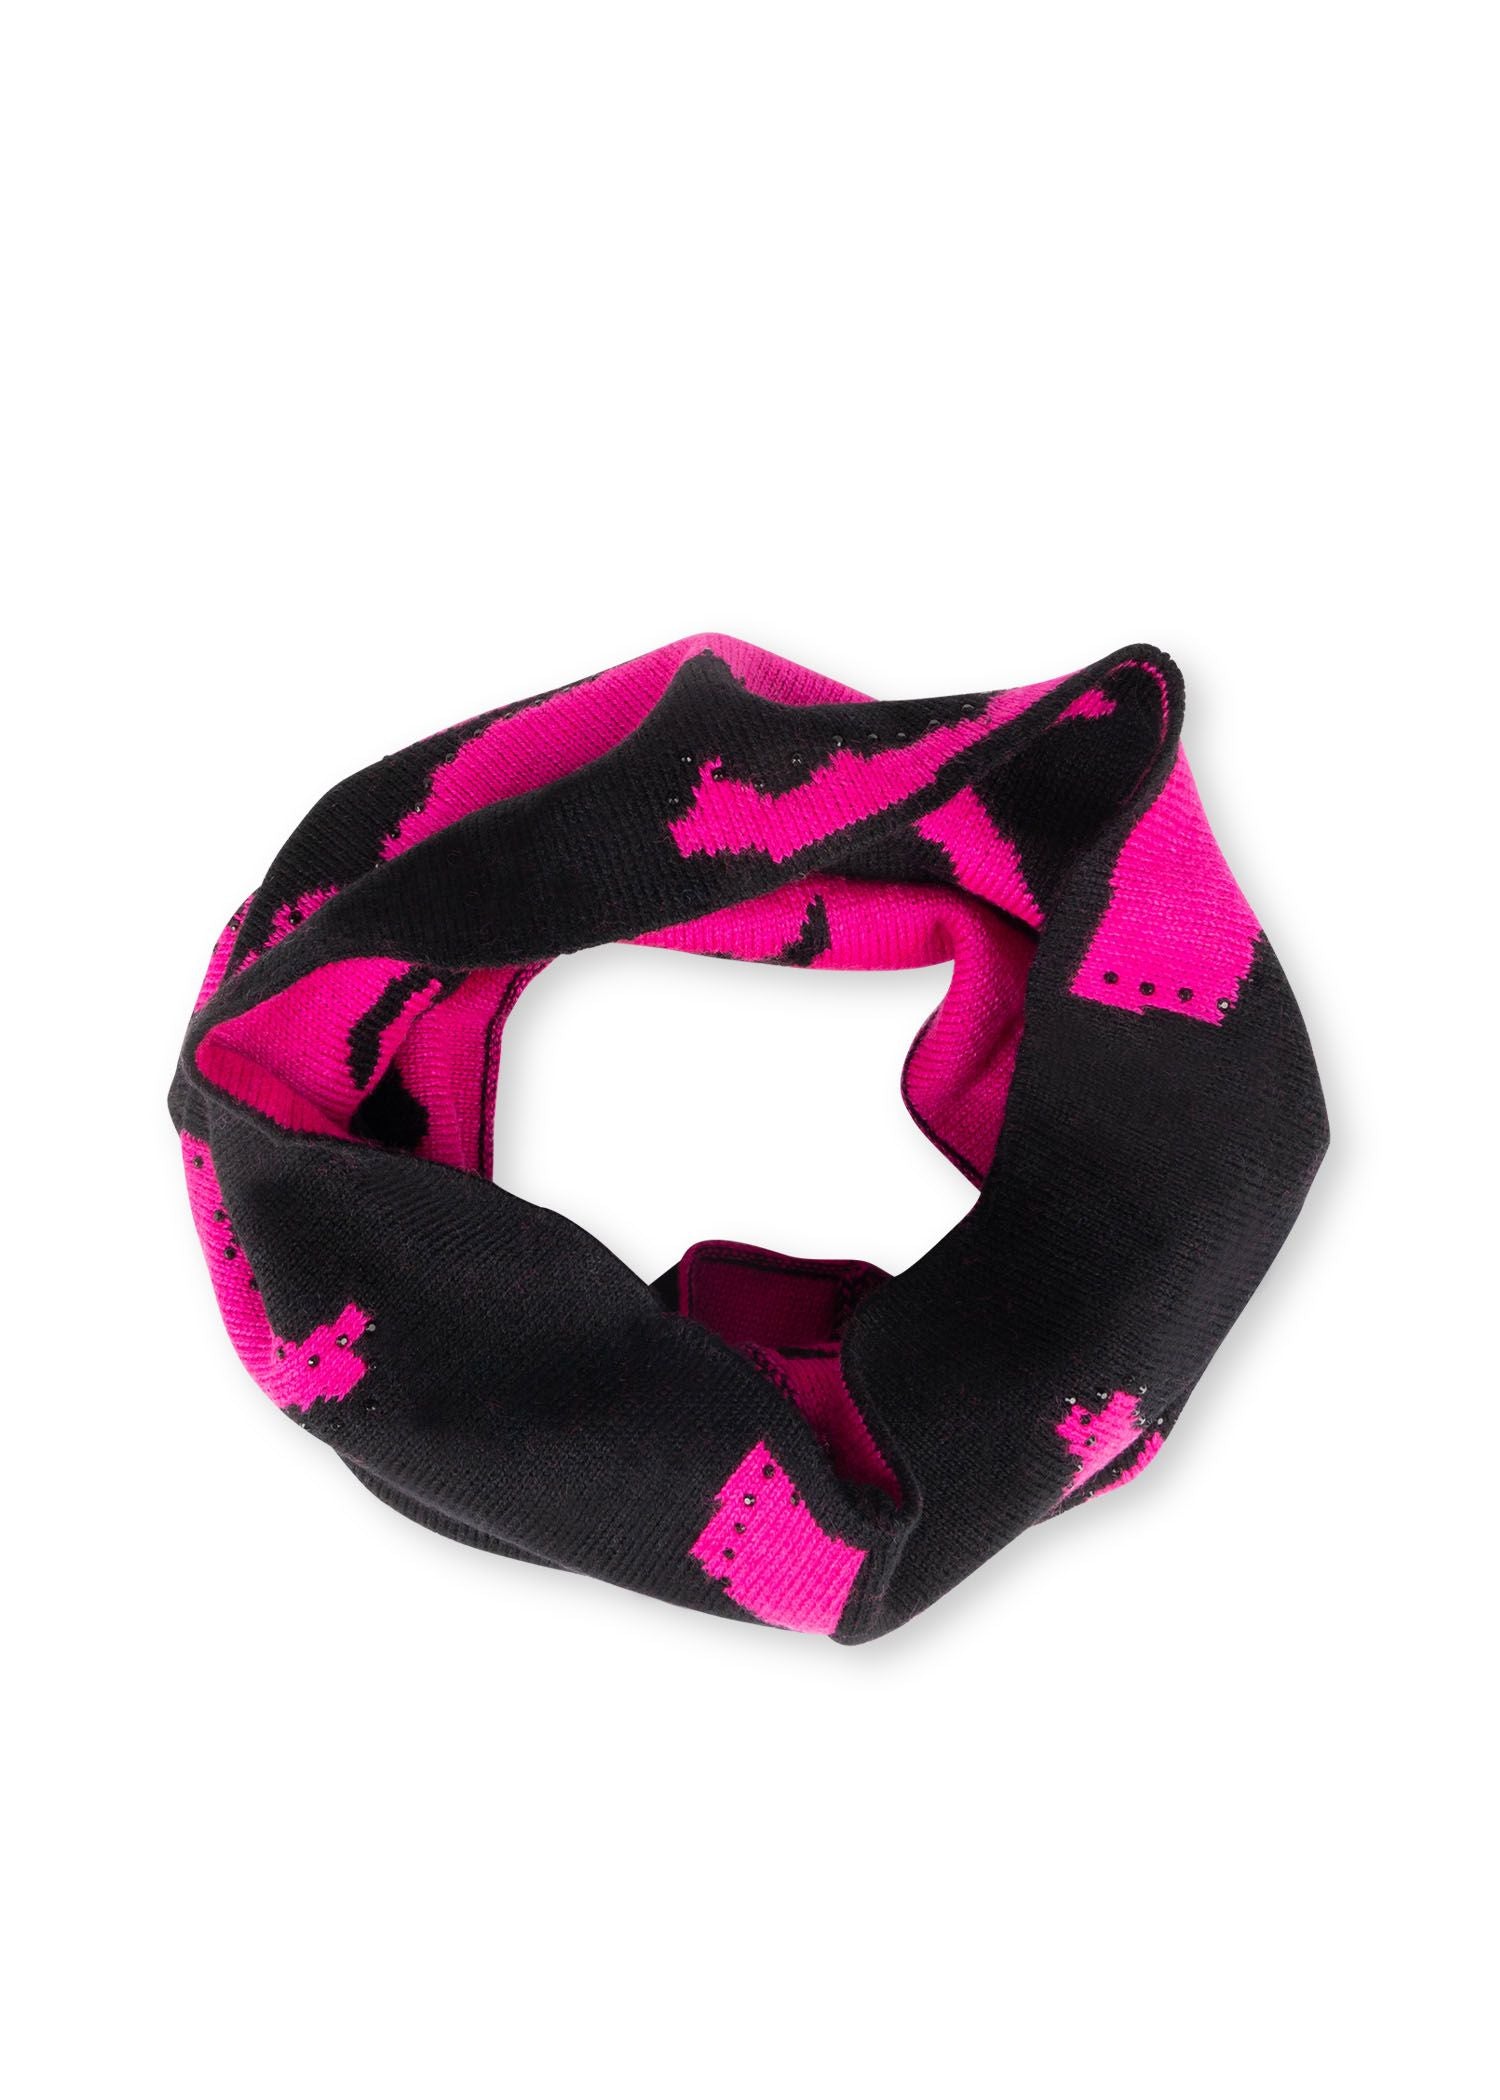 colorado black/hot pink camo neck warmer